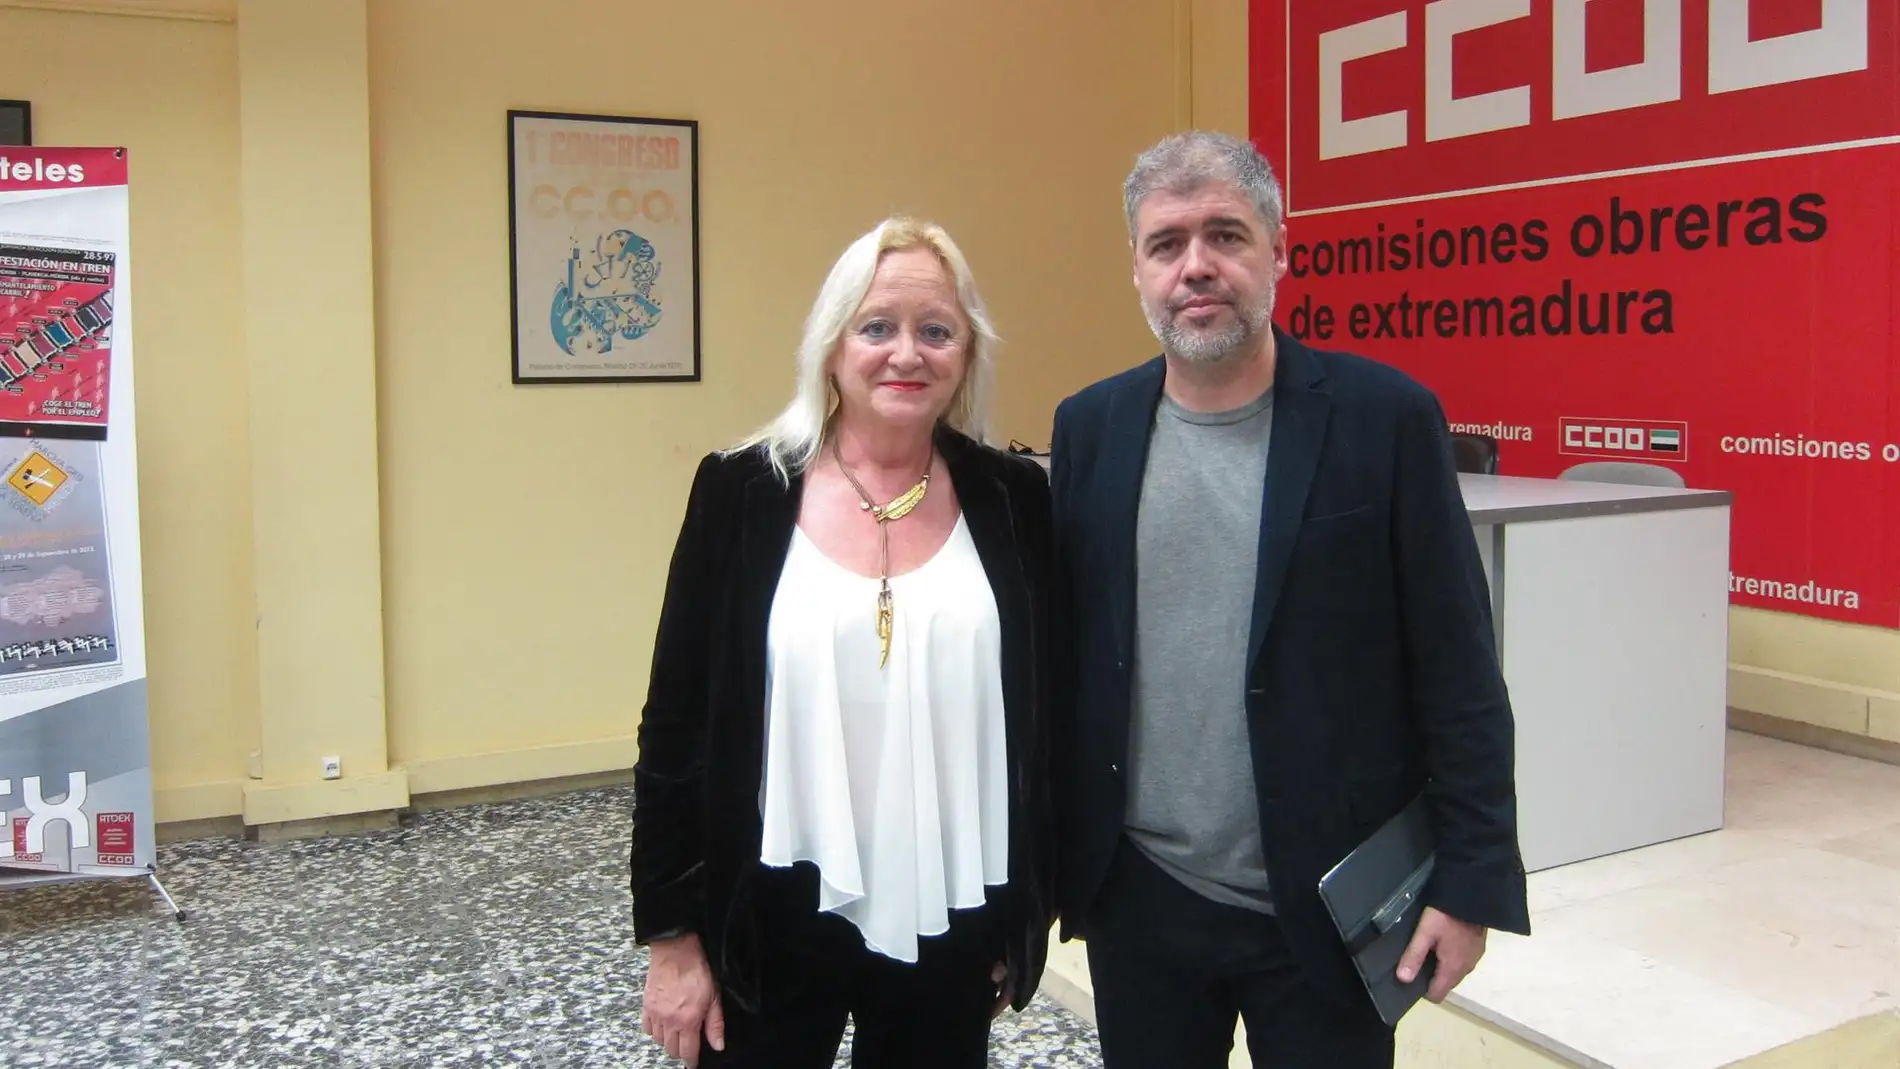 Acto del sindicato CCOO este miércoles en Badajoz con Unai Sordo y Encarna Chacón